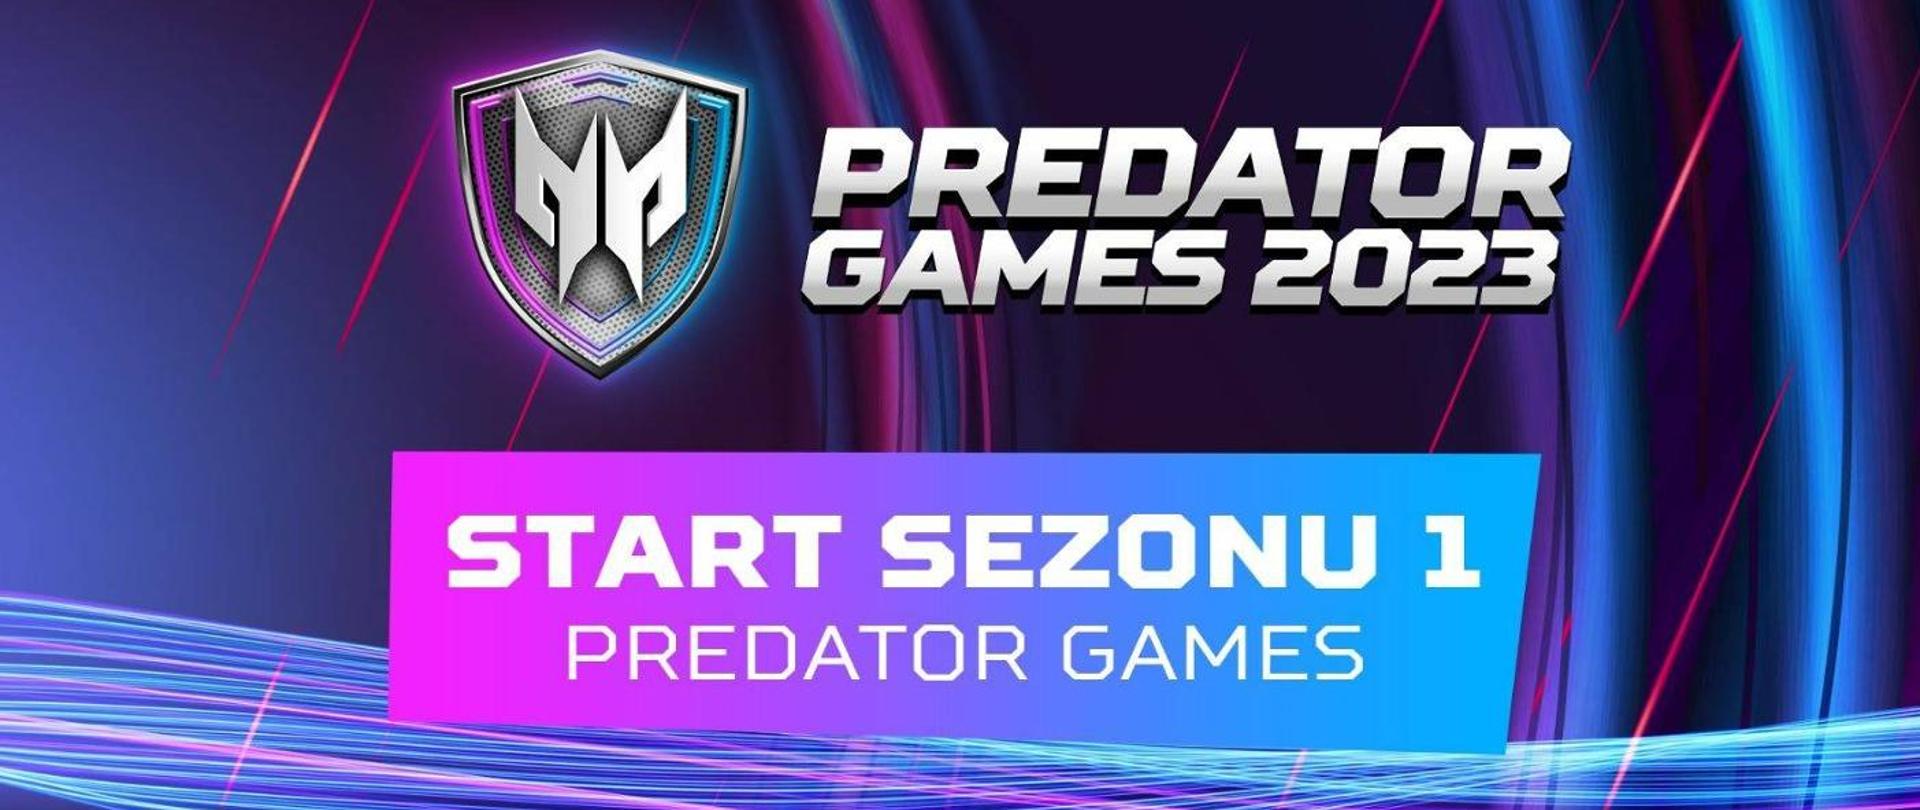 Grafika - na niebiesko-fioletowym tle kolorowe linie i napis Predator games 2023. Start sezonu 1 - Predator games.